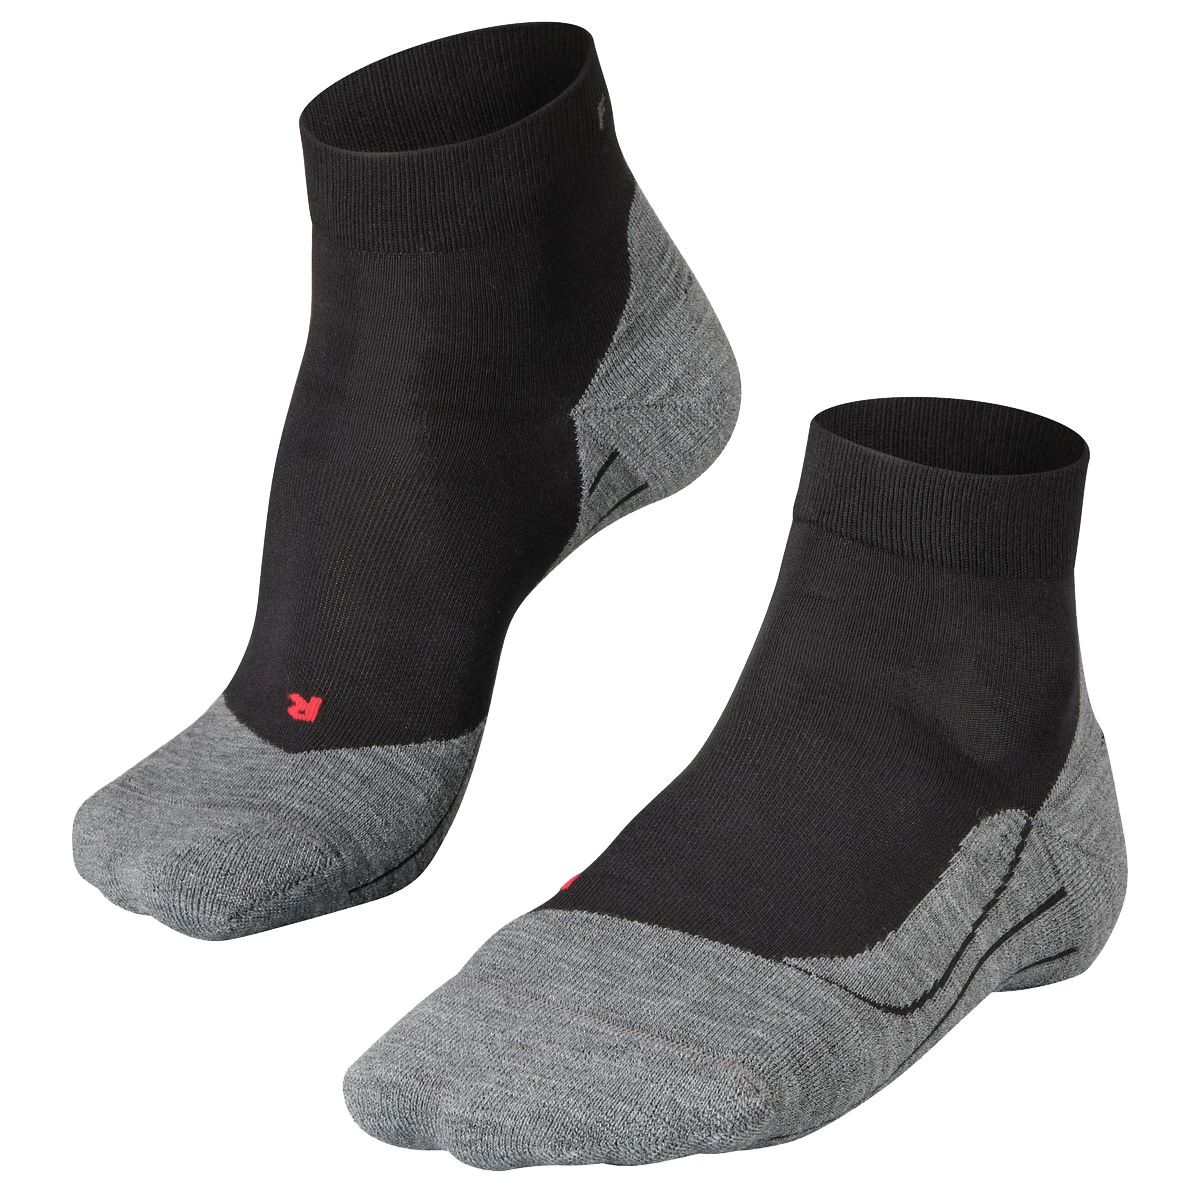 RU4 Short Men's Running Socks black-mix